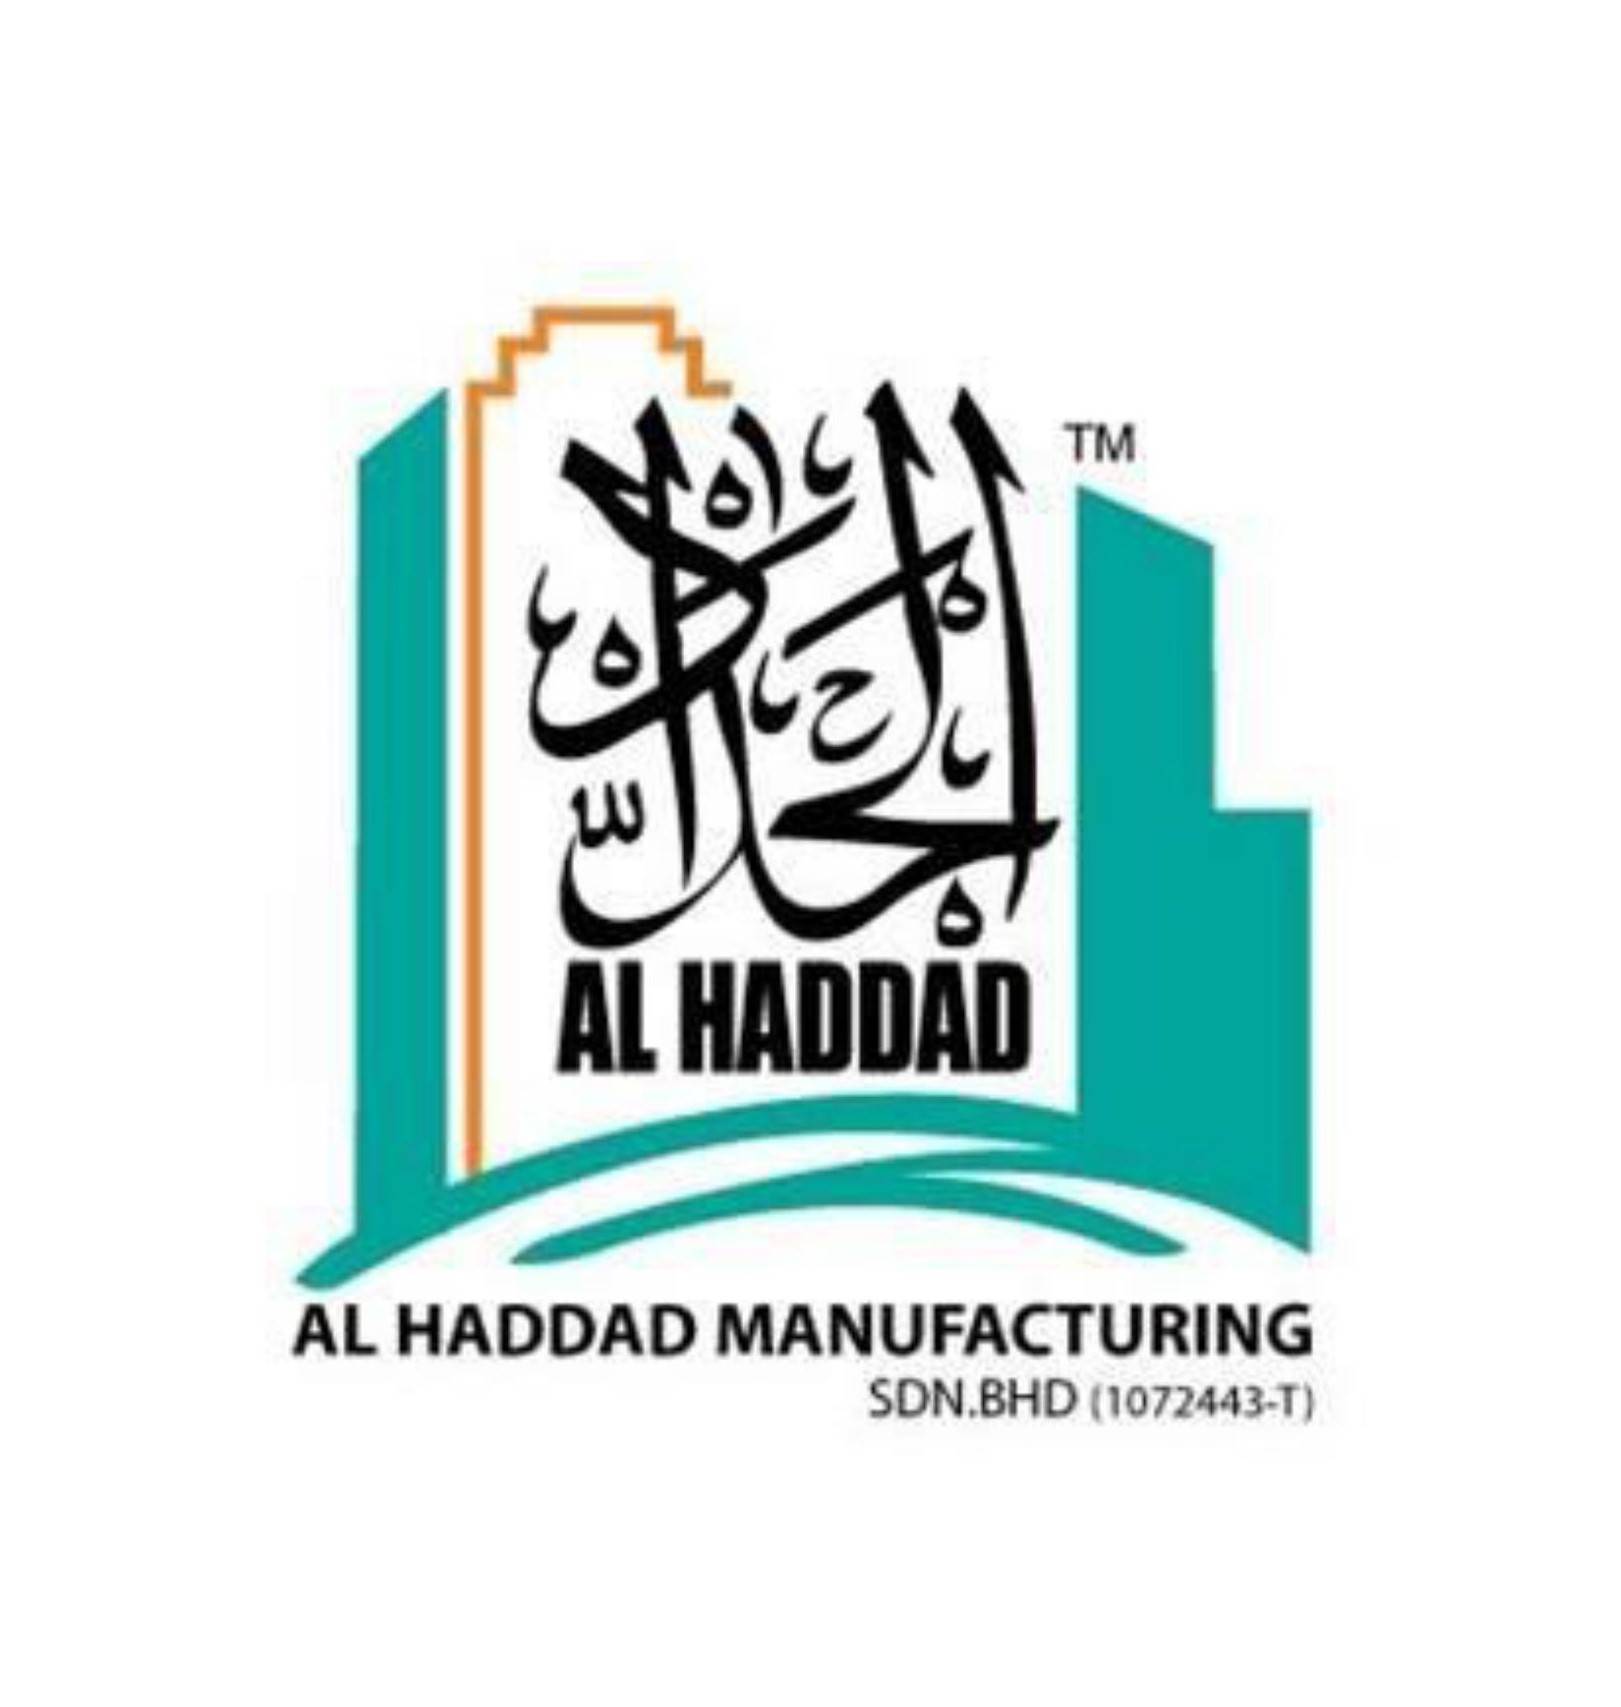 Al Haddad Manufacturing Sdn Bhd